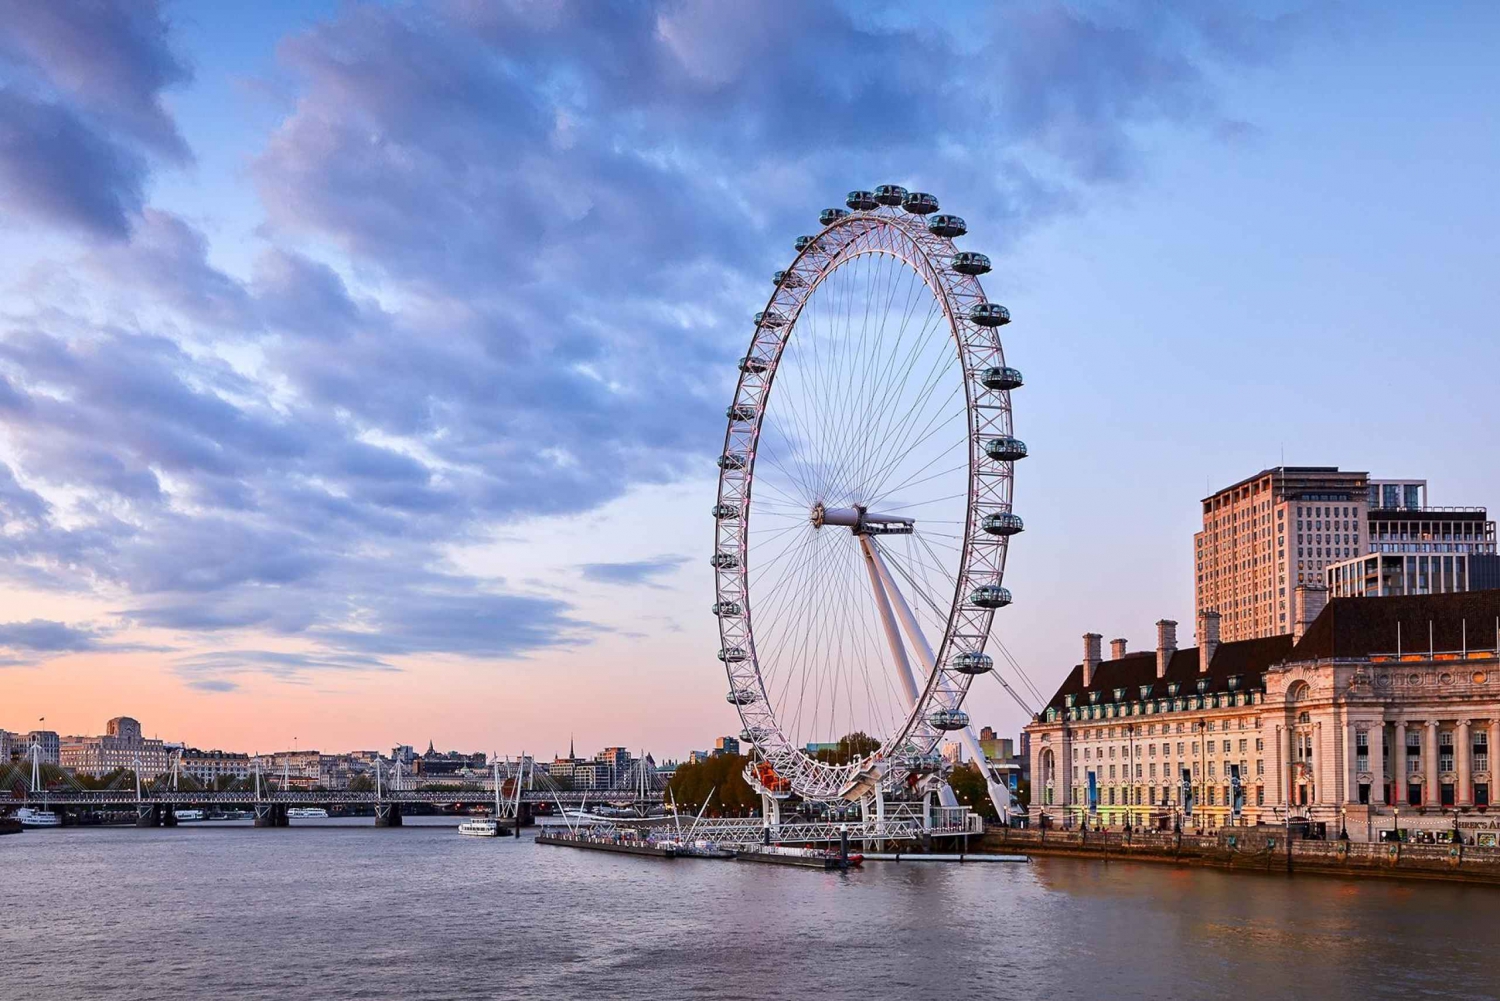 Londen: 3 dagen met must-see attracties inclusief London Eye